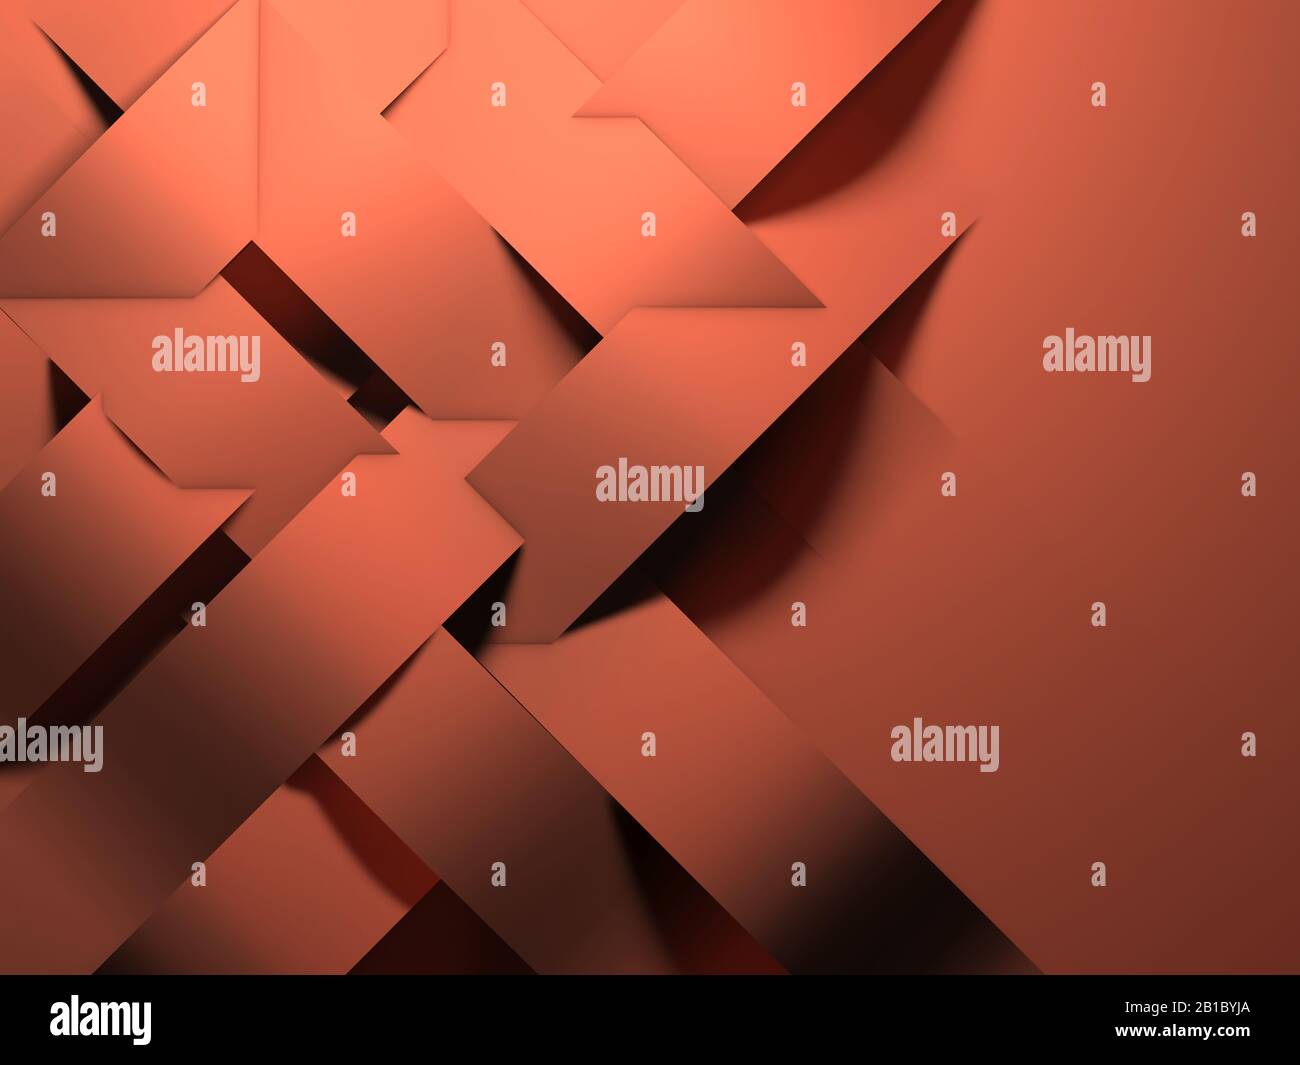 Arrière-plan géométrique abstrait, motif d'installation des bandes de papier sur la paroi orange, illustration du rendu 3d Banque D'Images